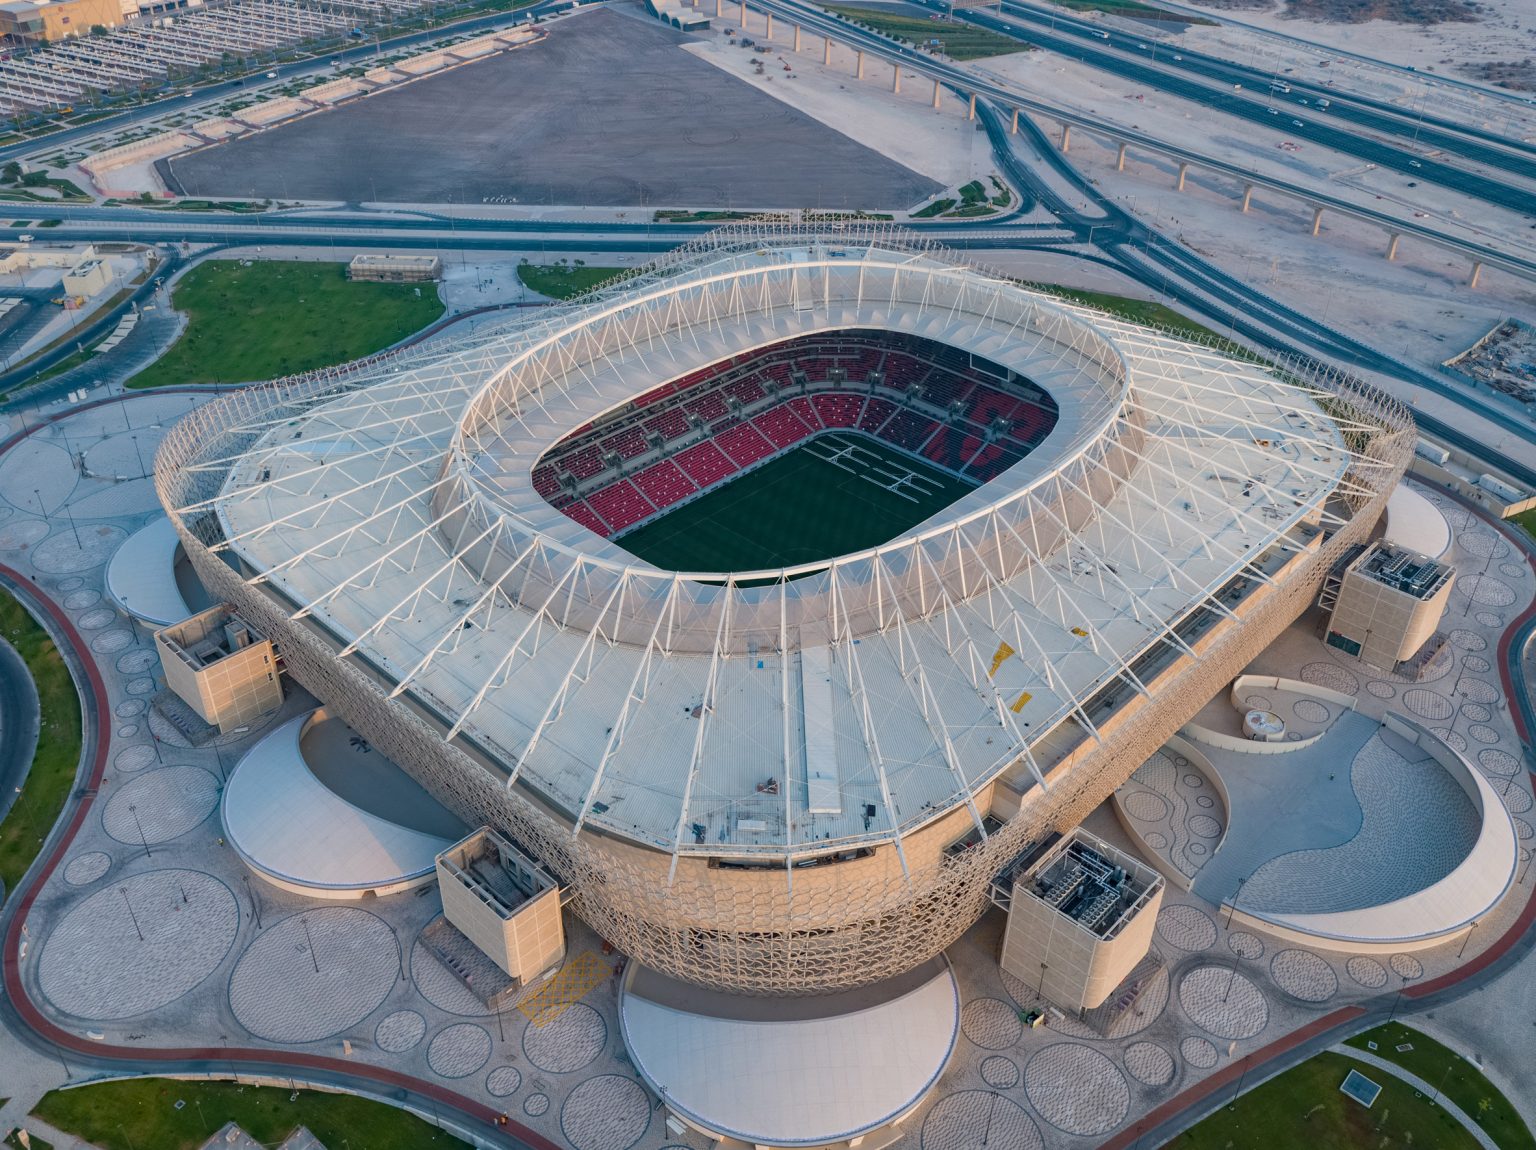 Intip Desain Memukau Stadion Piala Dunia 2022 Di Qatar